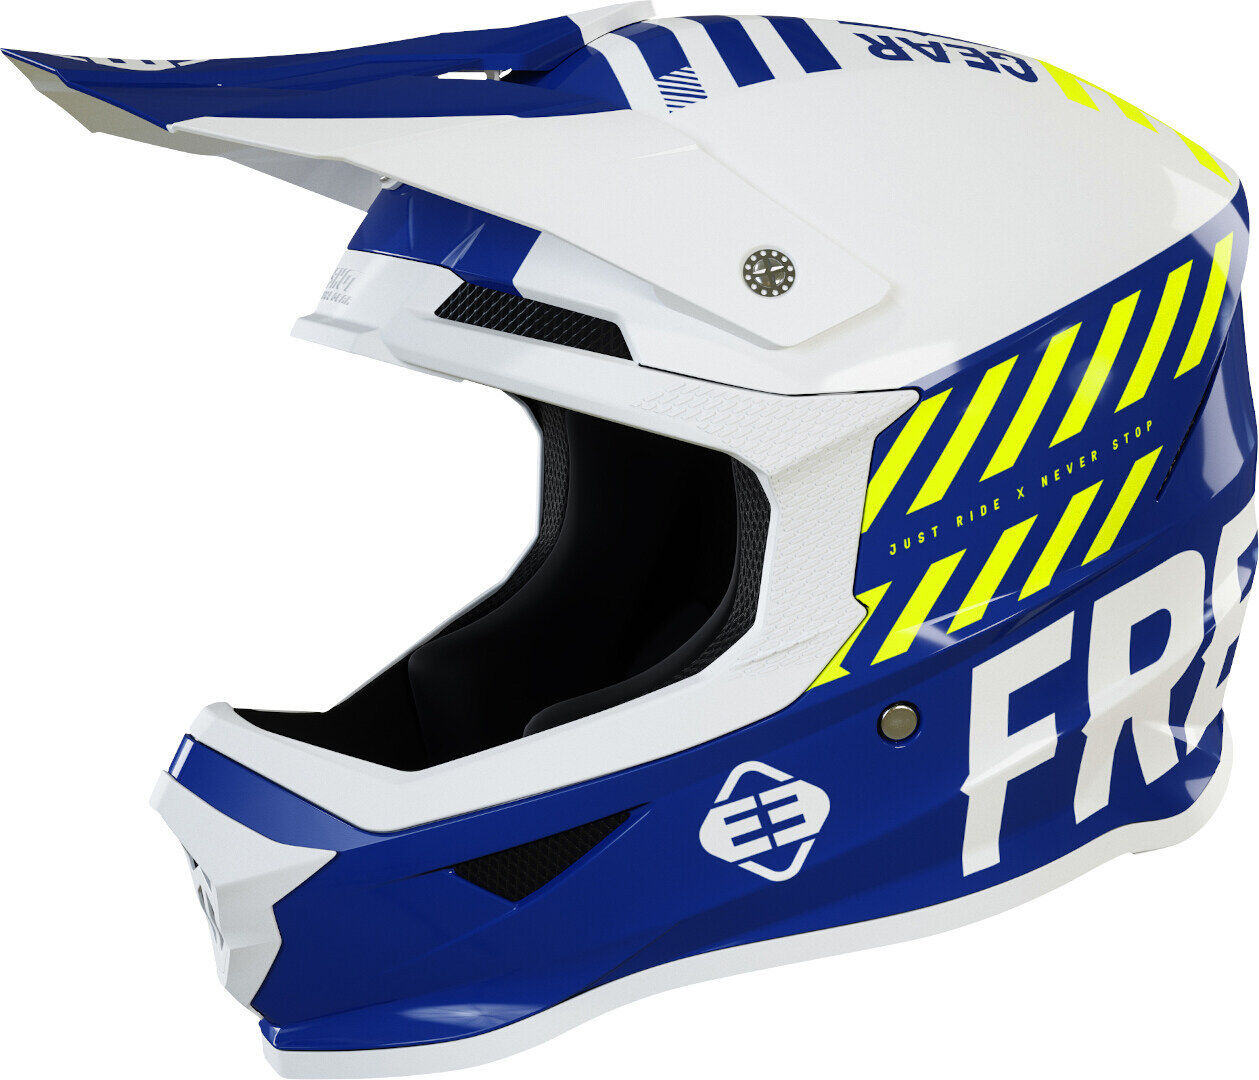 Freegun XP4 Danger Casco de Motocross - Blanco Turquesa Azul (2XL)